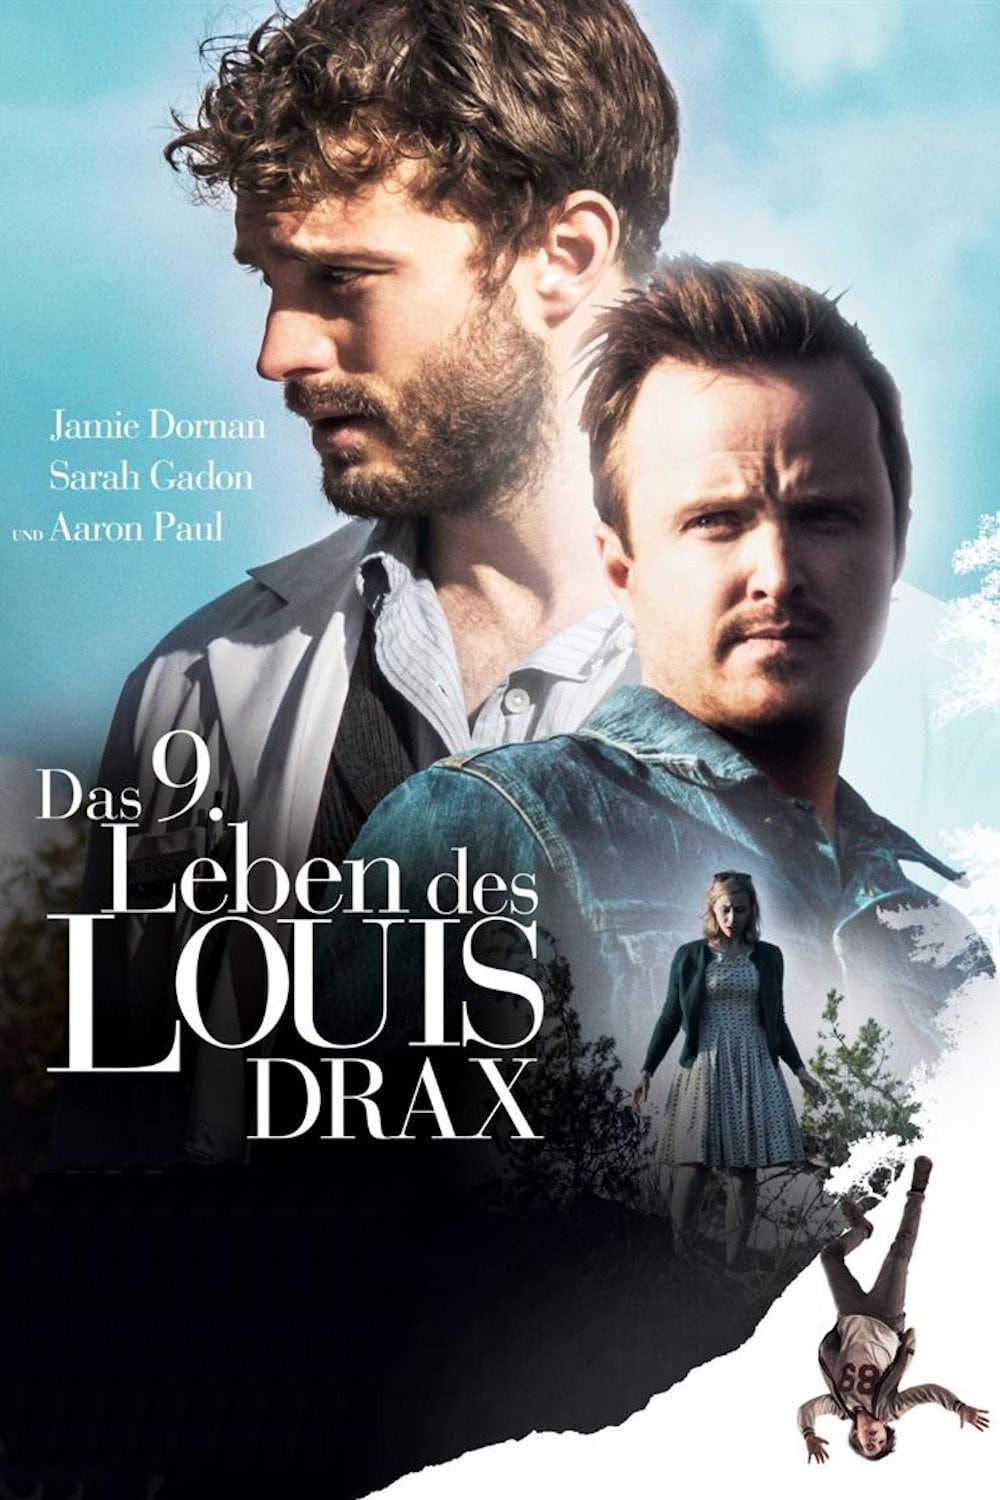 Plakat von "Das 9. Leben des Louis Drax"